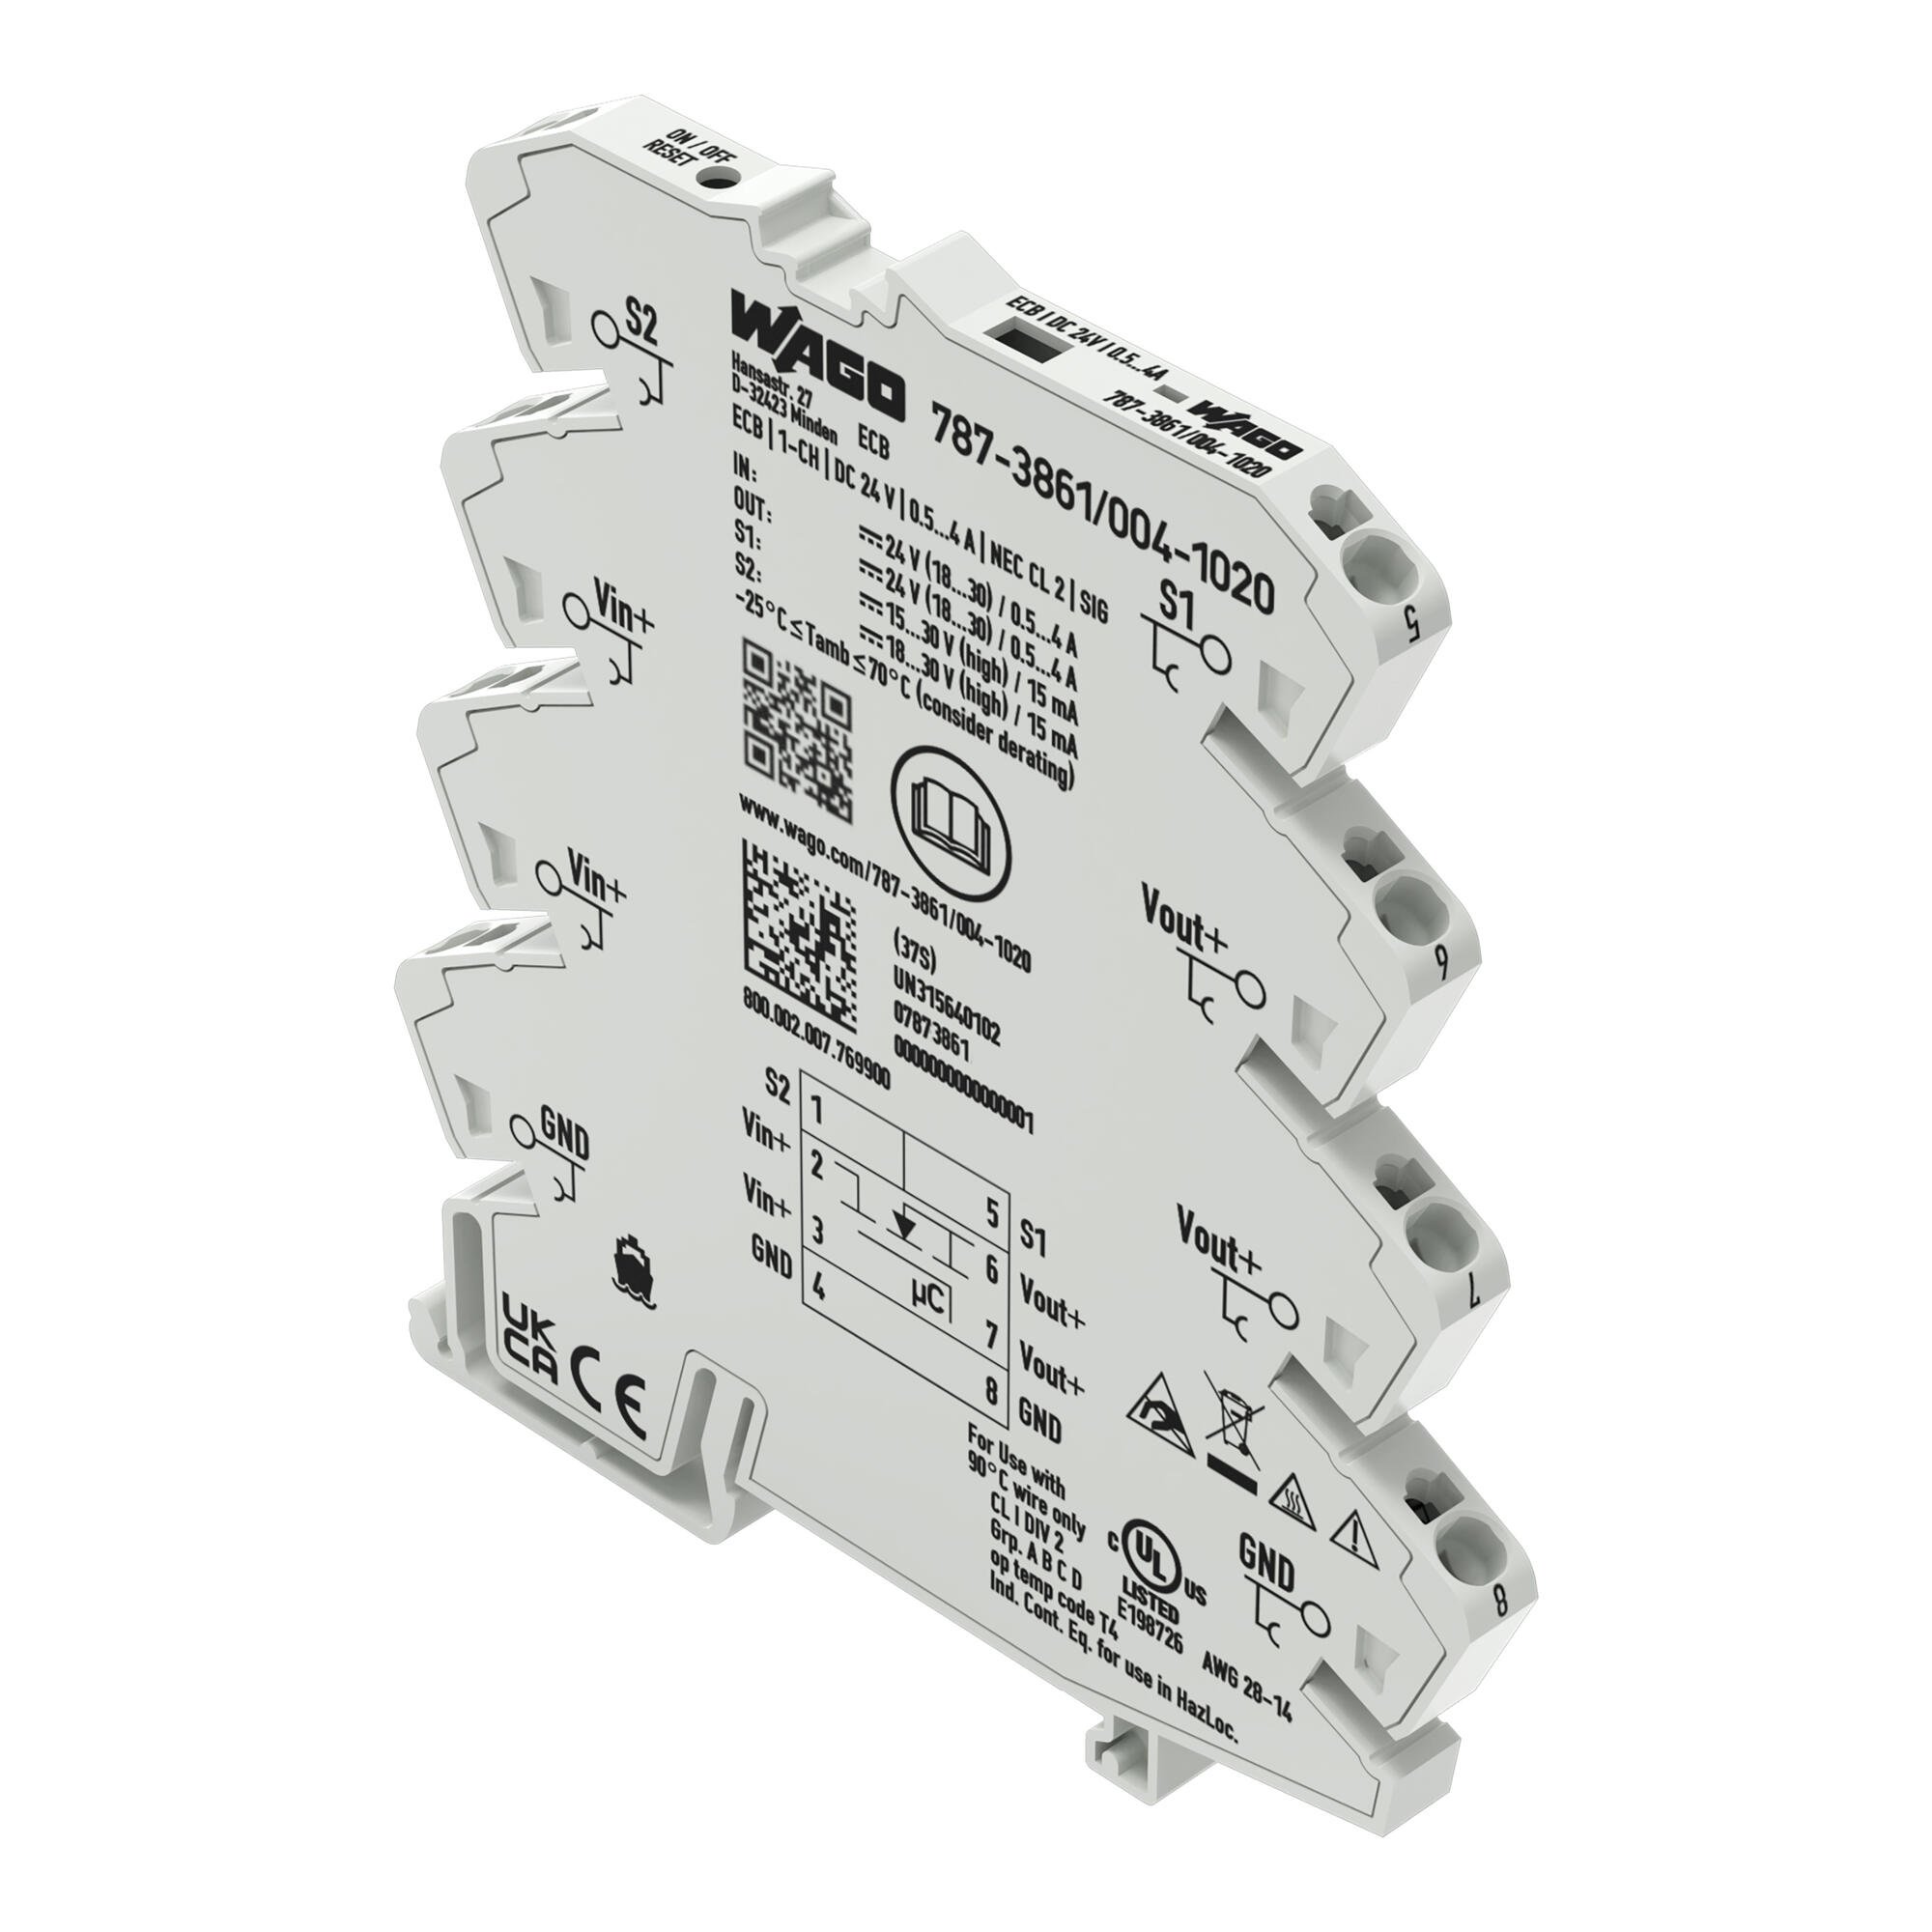 Elektronisk sikring; 1-kanals; 24 V DC indgangsspænding; kan justeres 0,5 - 4 A; NEC klasse 2; Signalkontakt